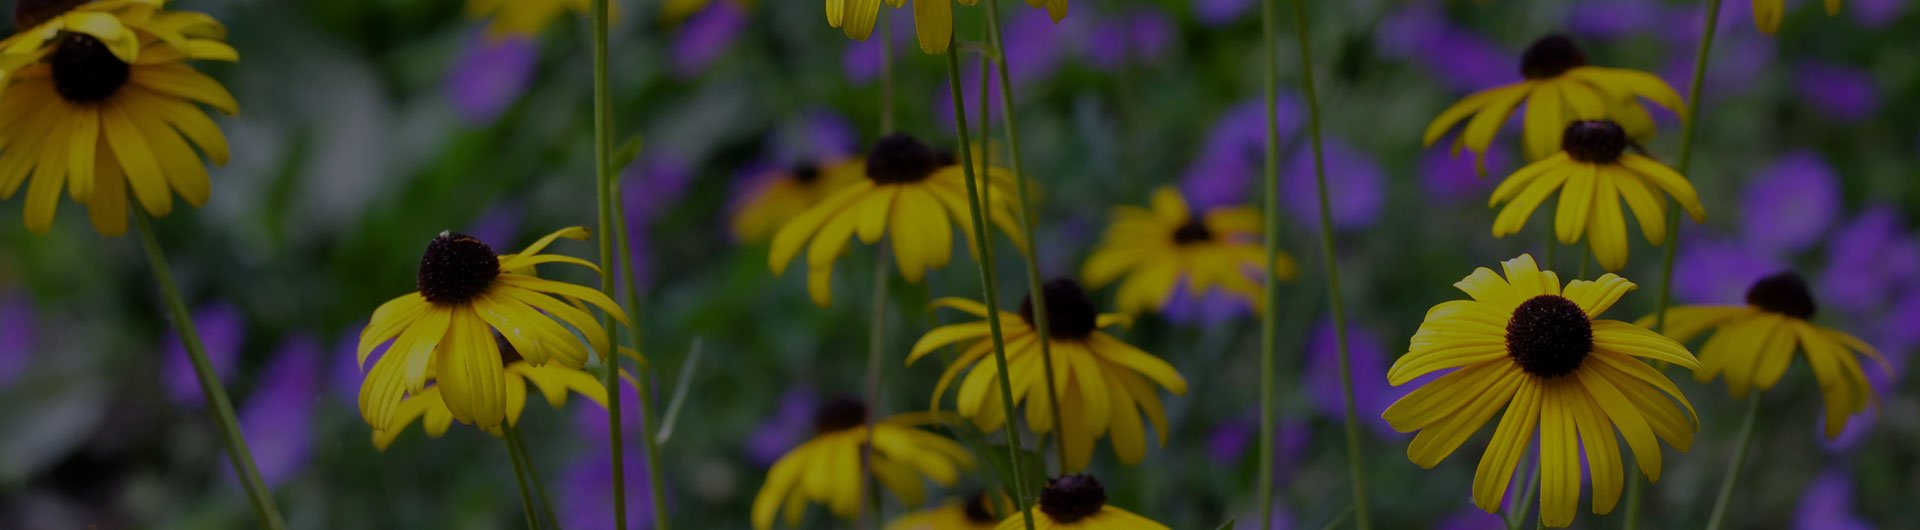 Black-eyed susans, Maryland's state flower.